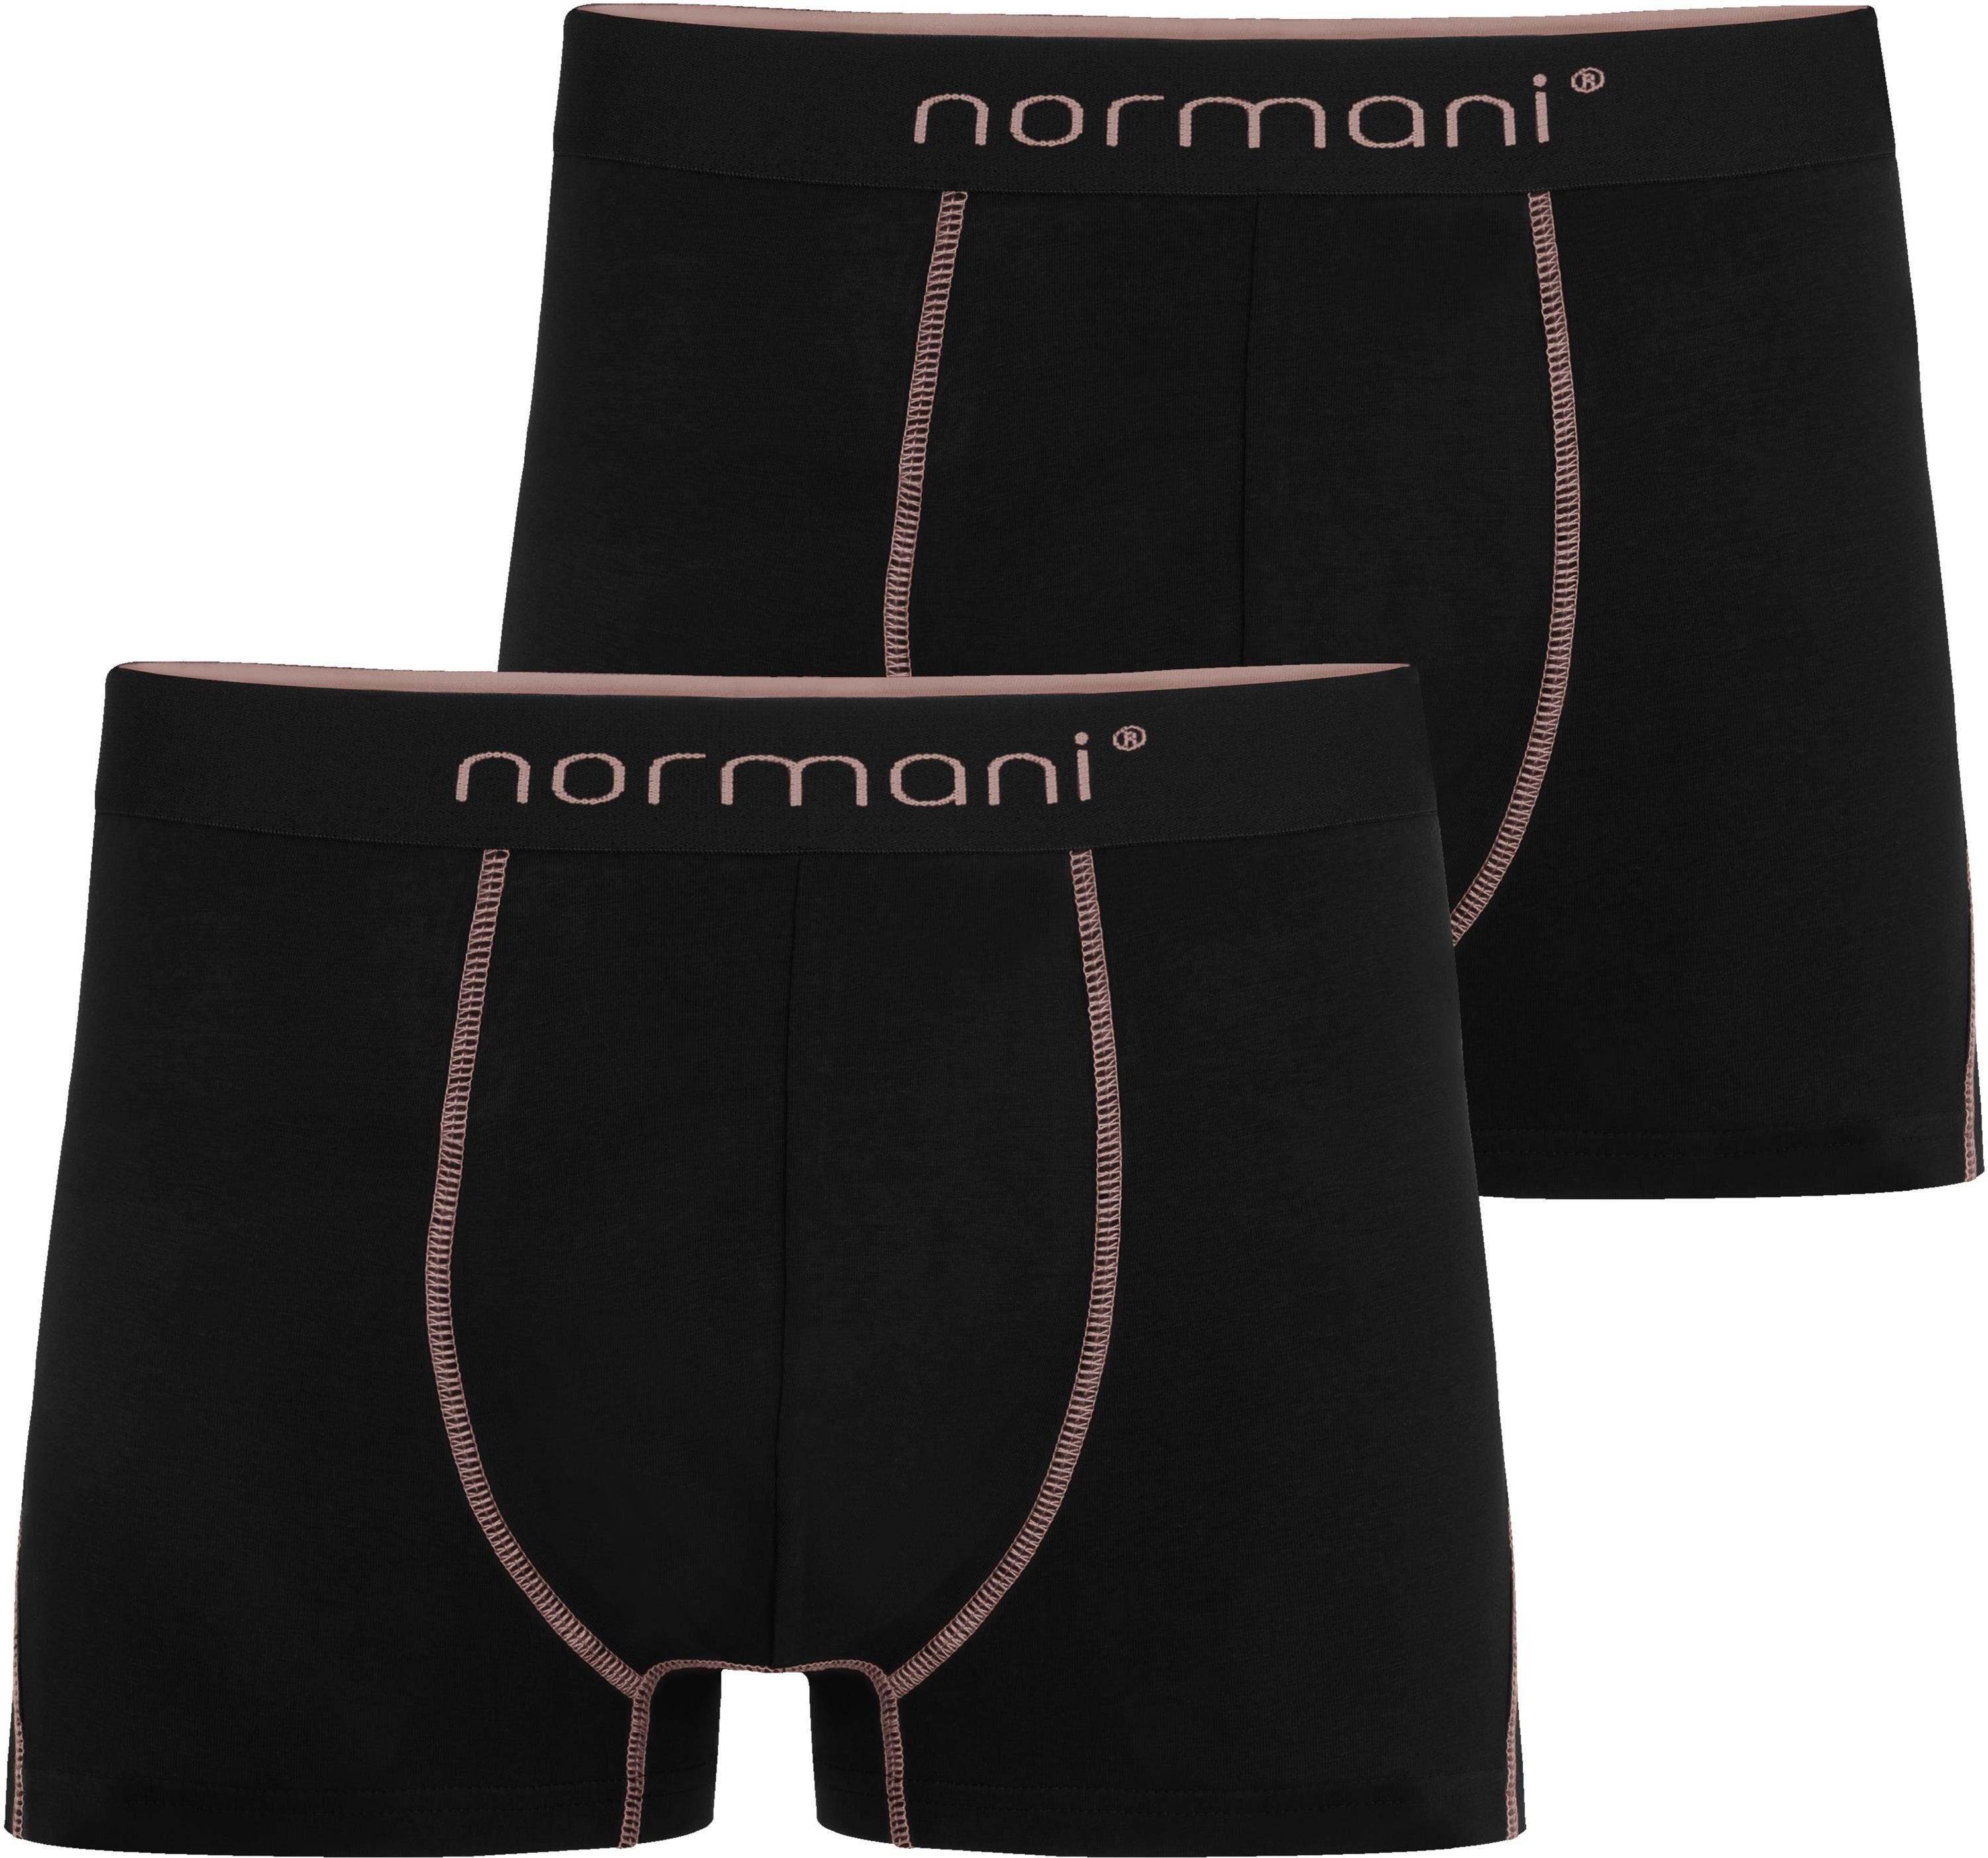 Herren Stanley normani aus Unterhose atmungsaktiver Lachs Baumwolle Boxershorts 2 für Männer Boxershorts